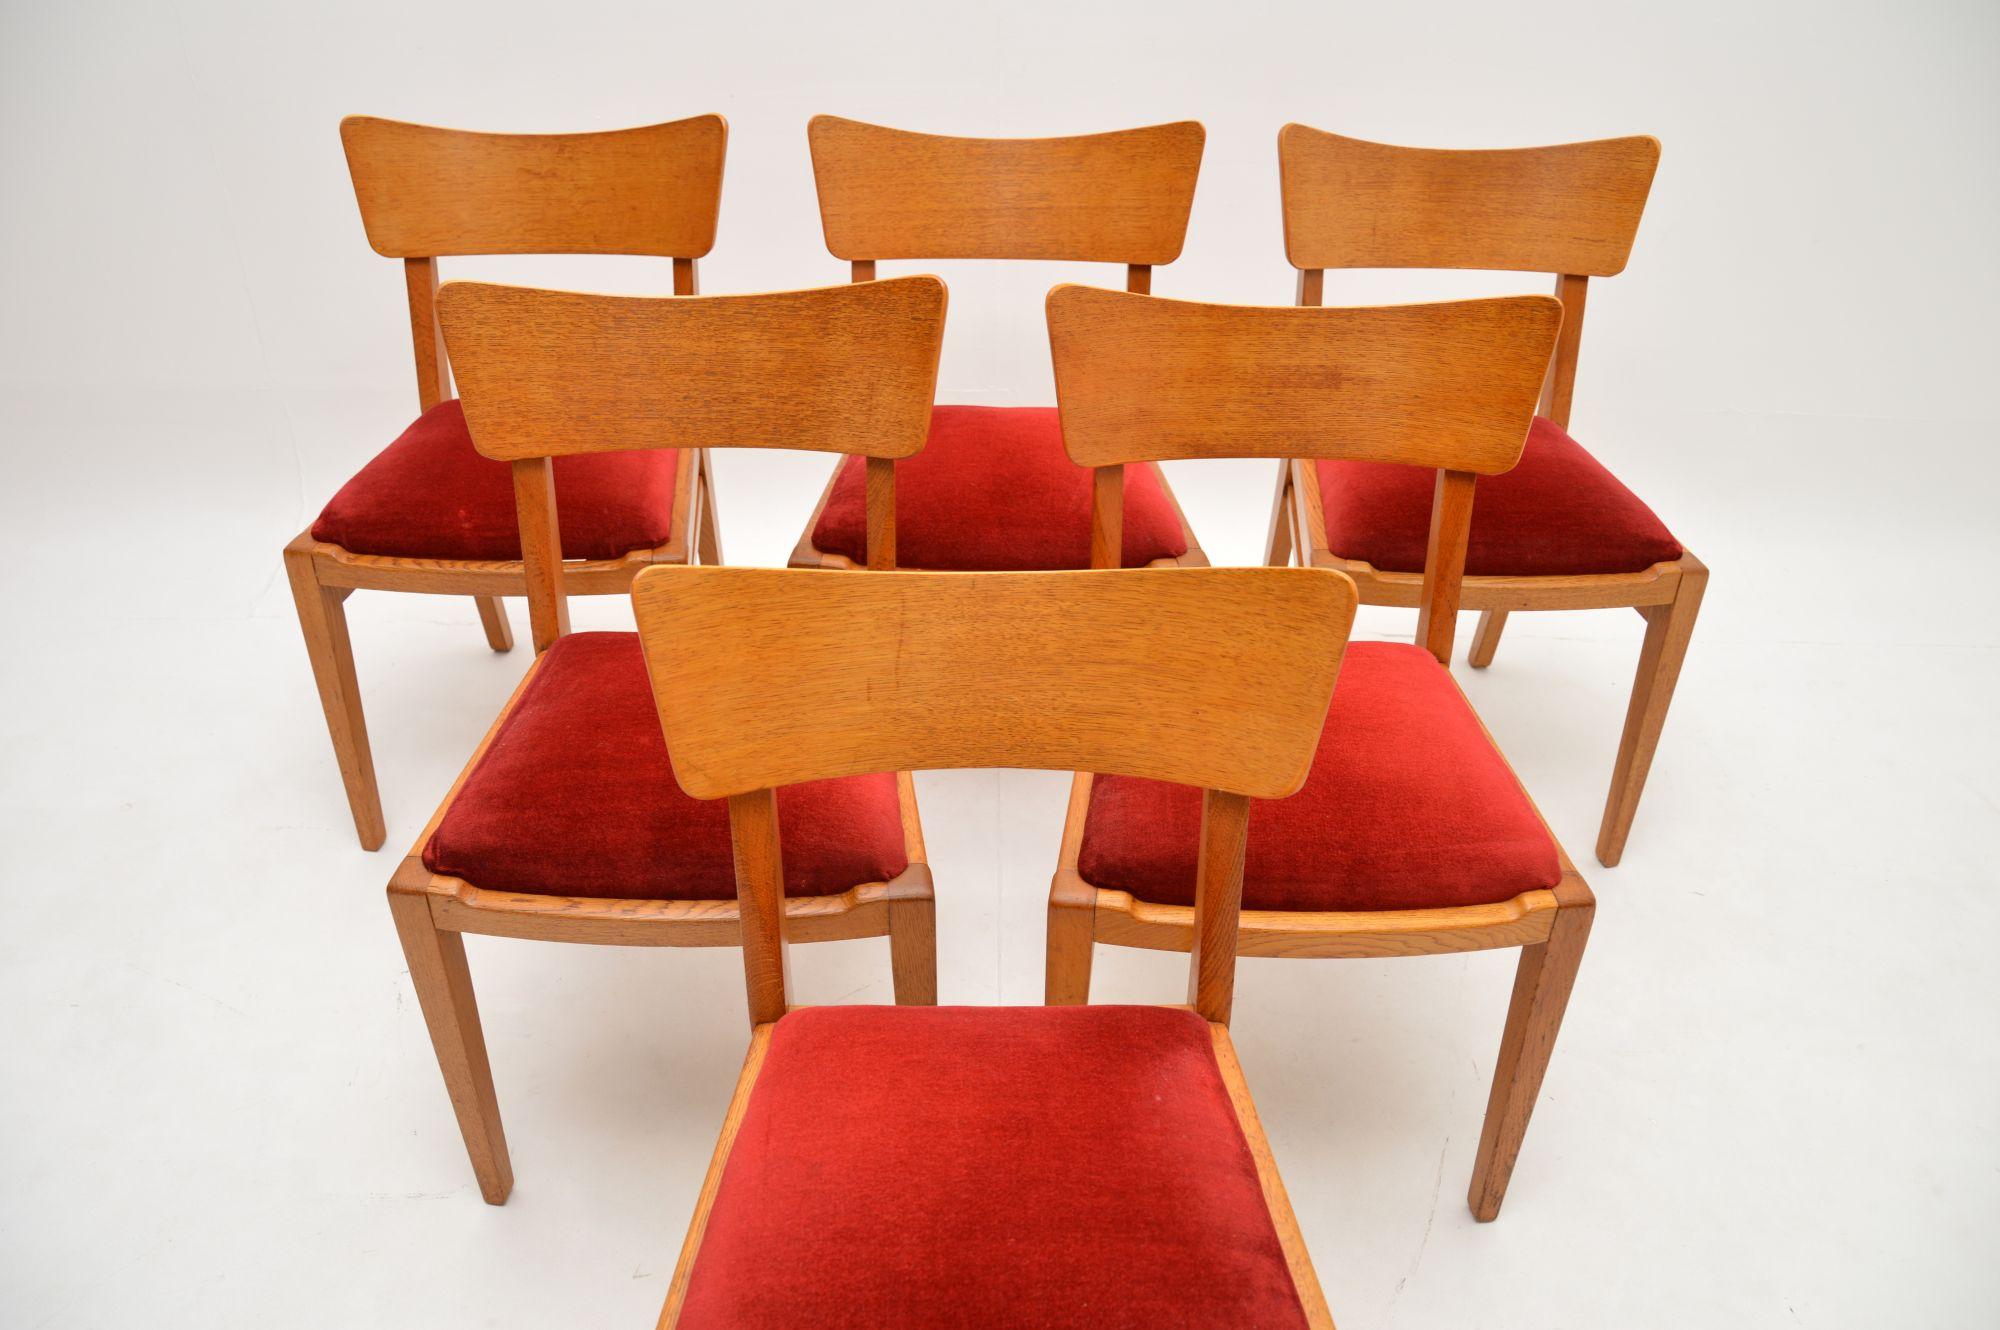 Ein stilvolles und sehr seltenes Set von sechs G-Plan-Esszimmerstühlen aus Eiche. Sie waren Teil der Brandon-Reihe, dieses Modell erscheint im allerersten G-Plan-Katalog und stammt aus den frühen 1950er Jahren.

Die Qualität ist hervorragend, sie